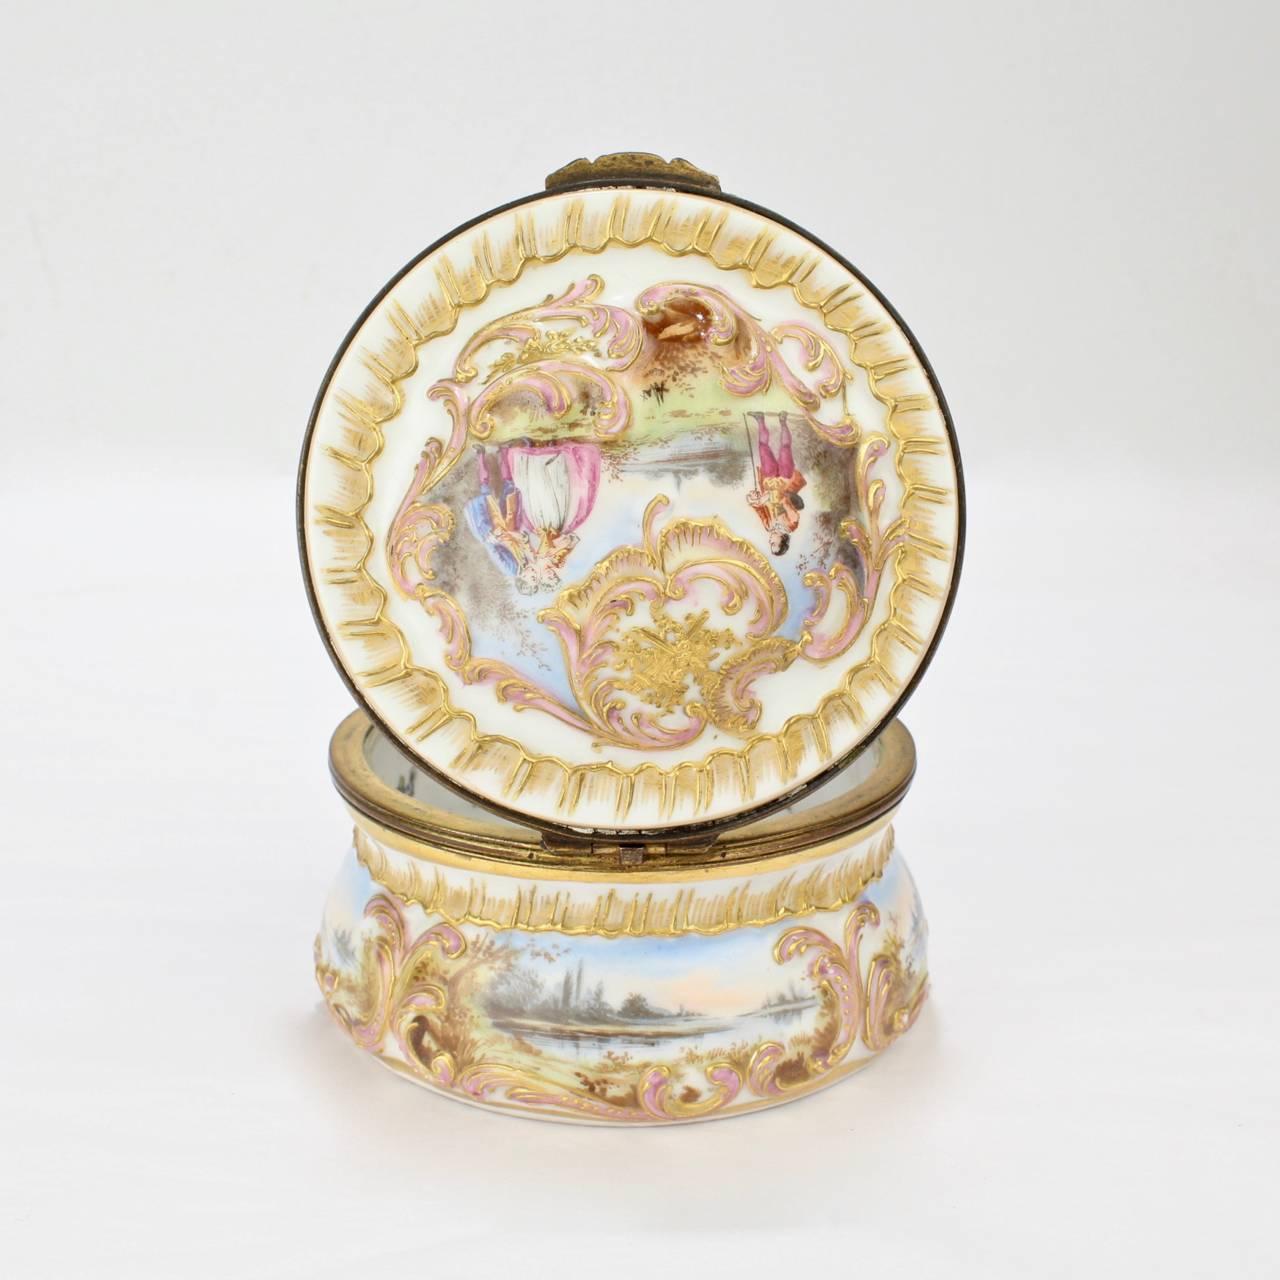 19th Century Antique Gilt Paris Porcelain Table Snuff Box or Round Casket by Bloch & Bourdois For Sale